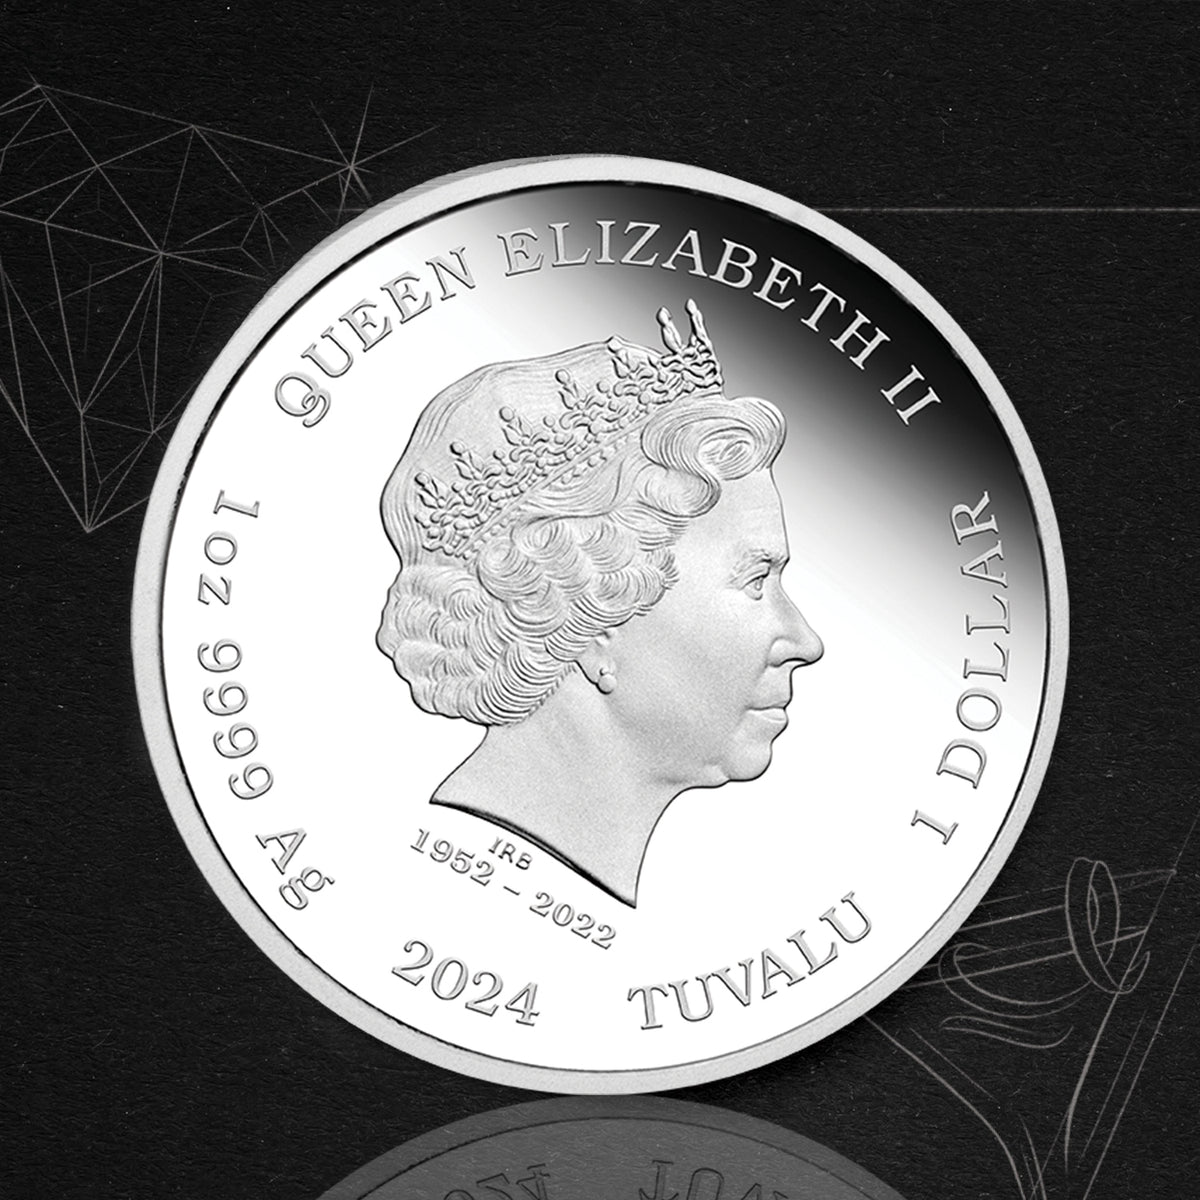 James Bond Pierce Brosnan 1-Unzen-Silbermünze in Proof-Qualität – nummerierte Ausgabe – von der Perth Mint